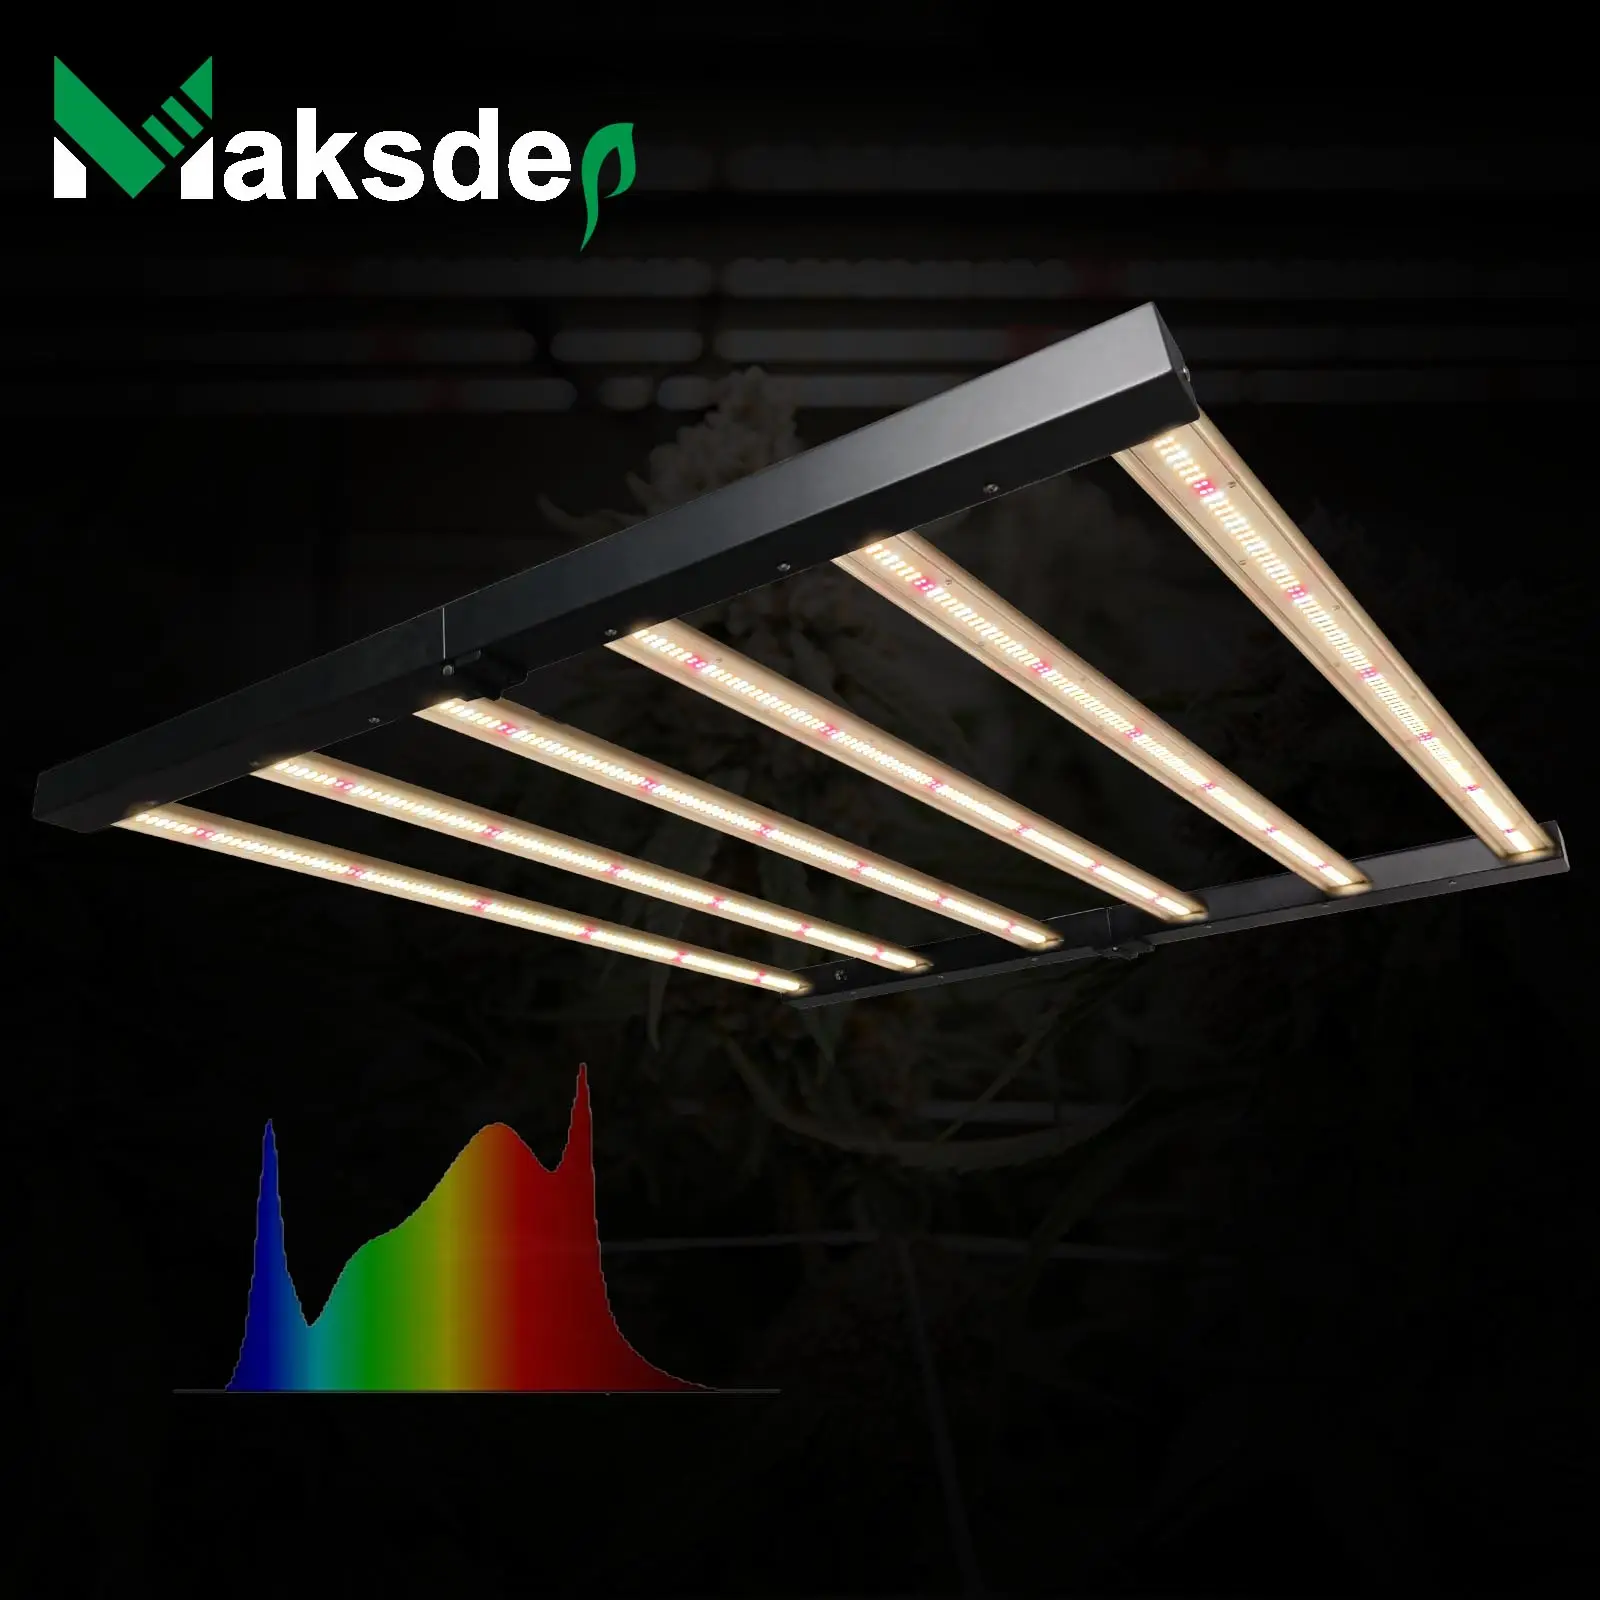 720 wát LED nhà máy phát triển ánh sáng quang phổ đầy đủ có thể gập lại LED phát triển ánh sáng 720 Wát cho trong nhà LED nhà máy phát triển ánh sáng